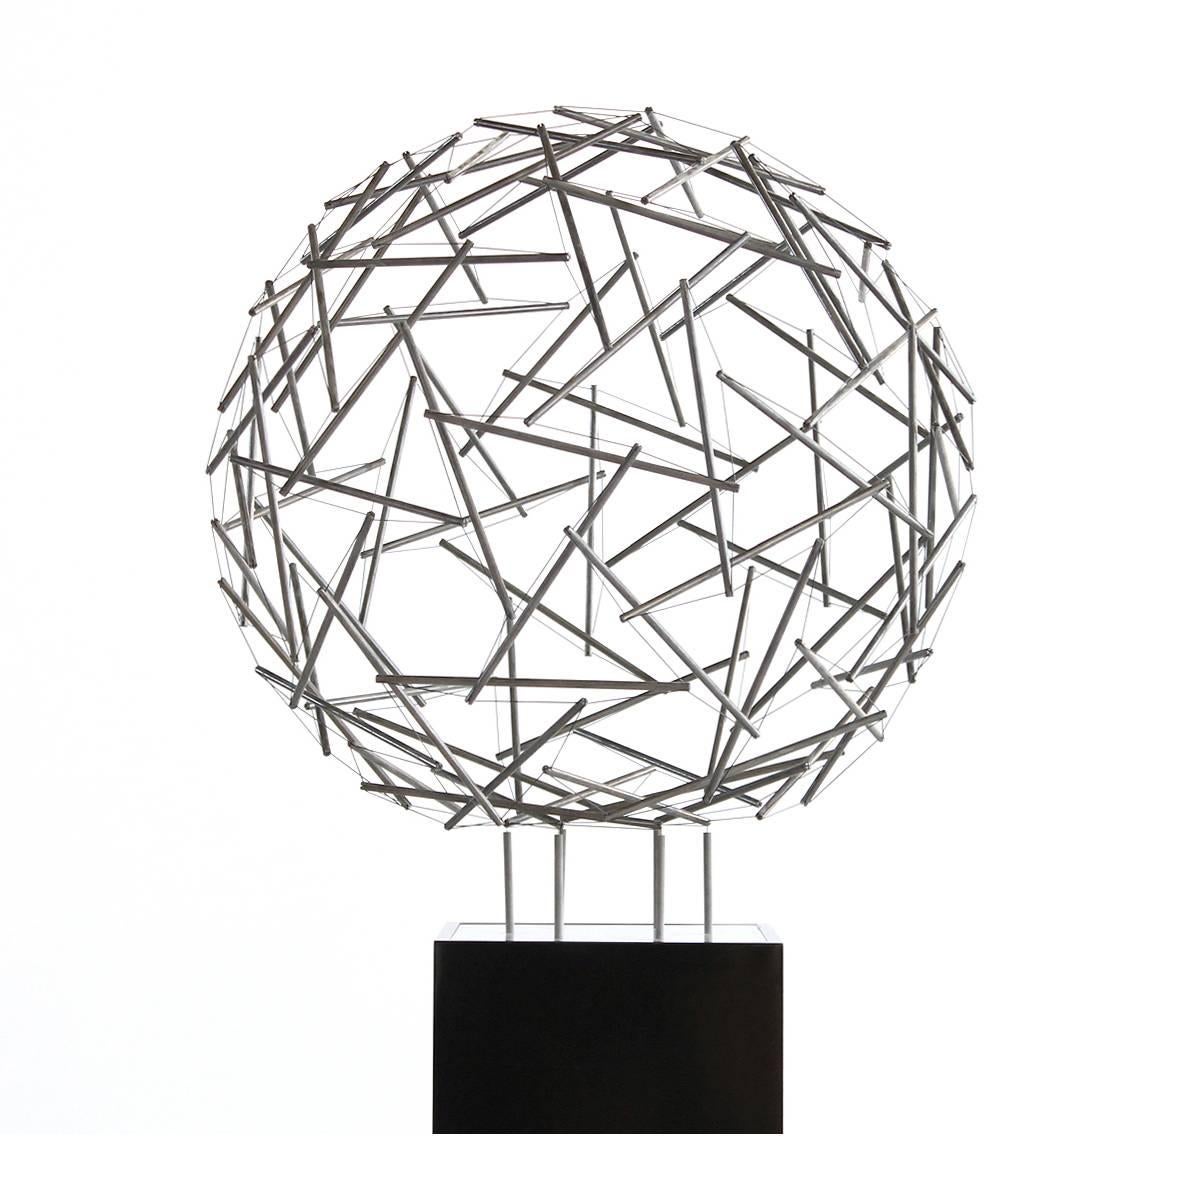 Buckminster Fuller "Geodesic Sphere" Sculpture